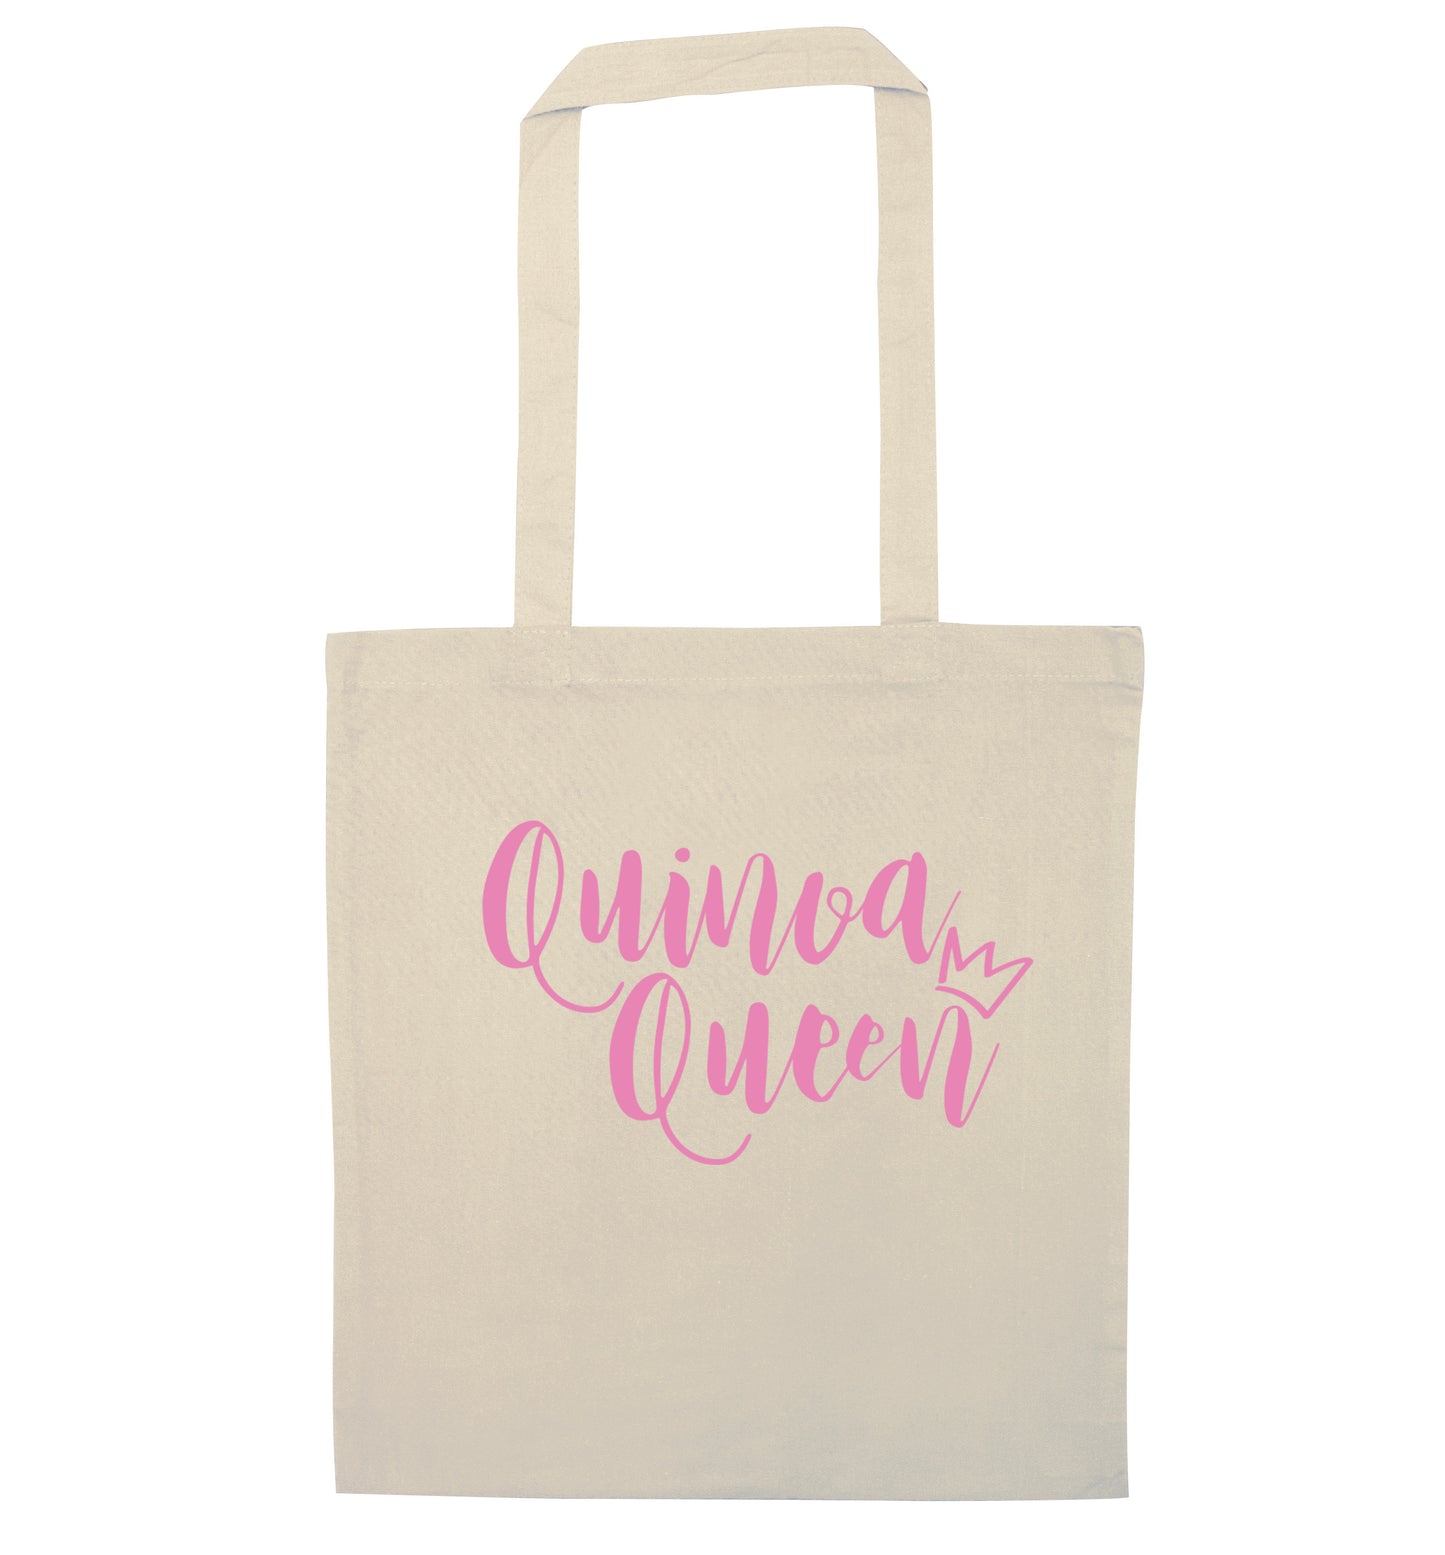 Quinoa Queen natural tote bag